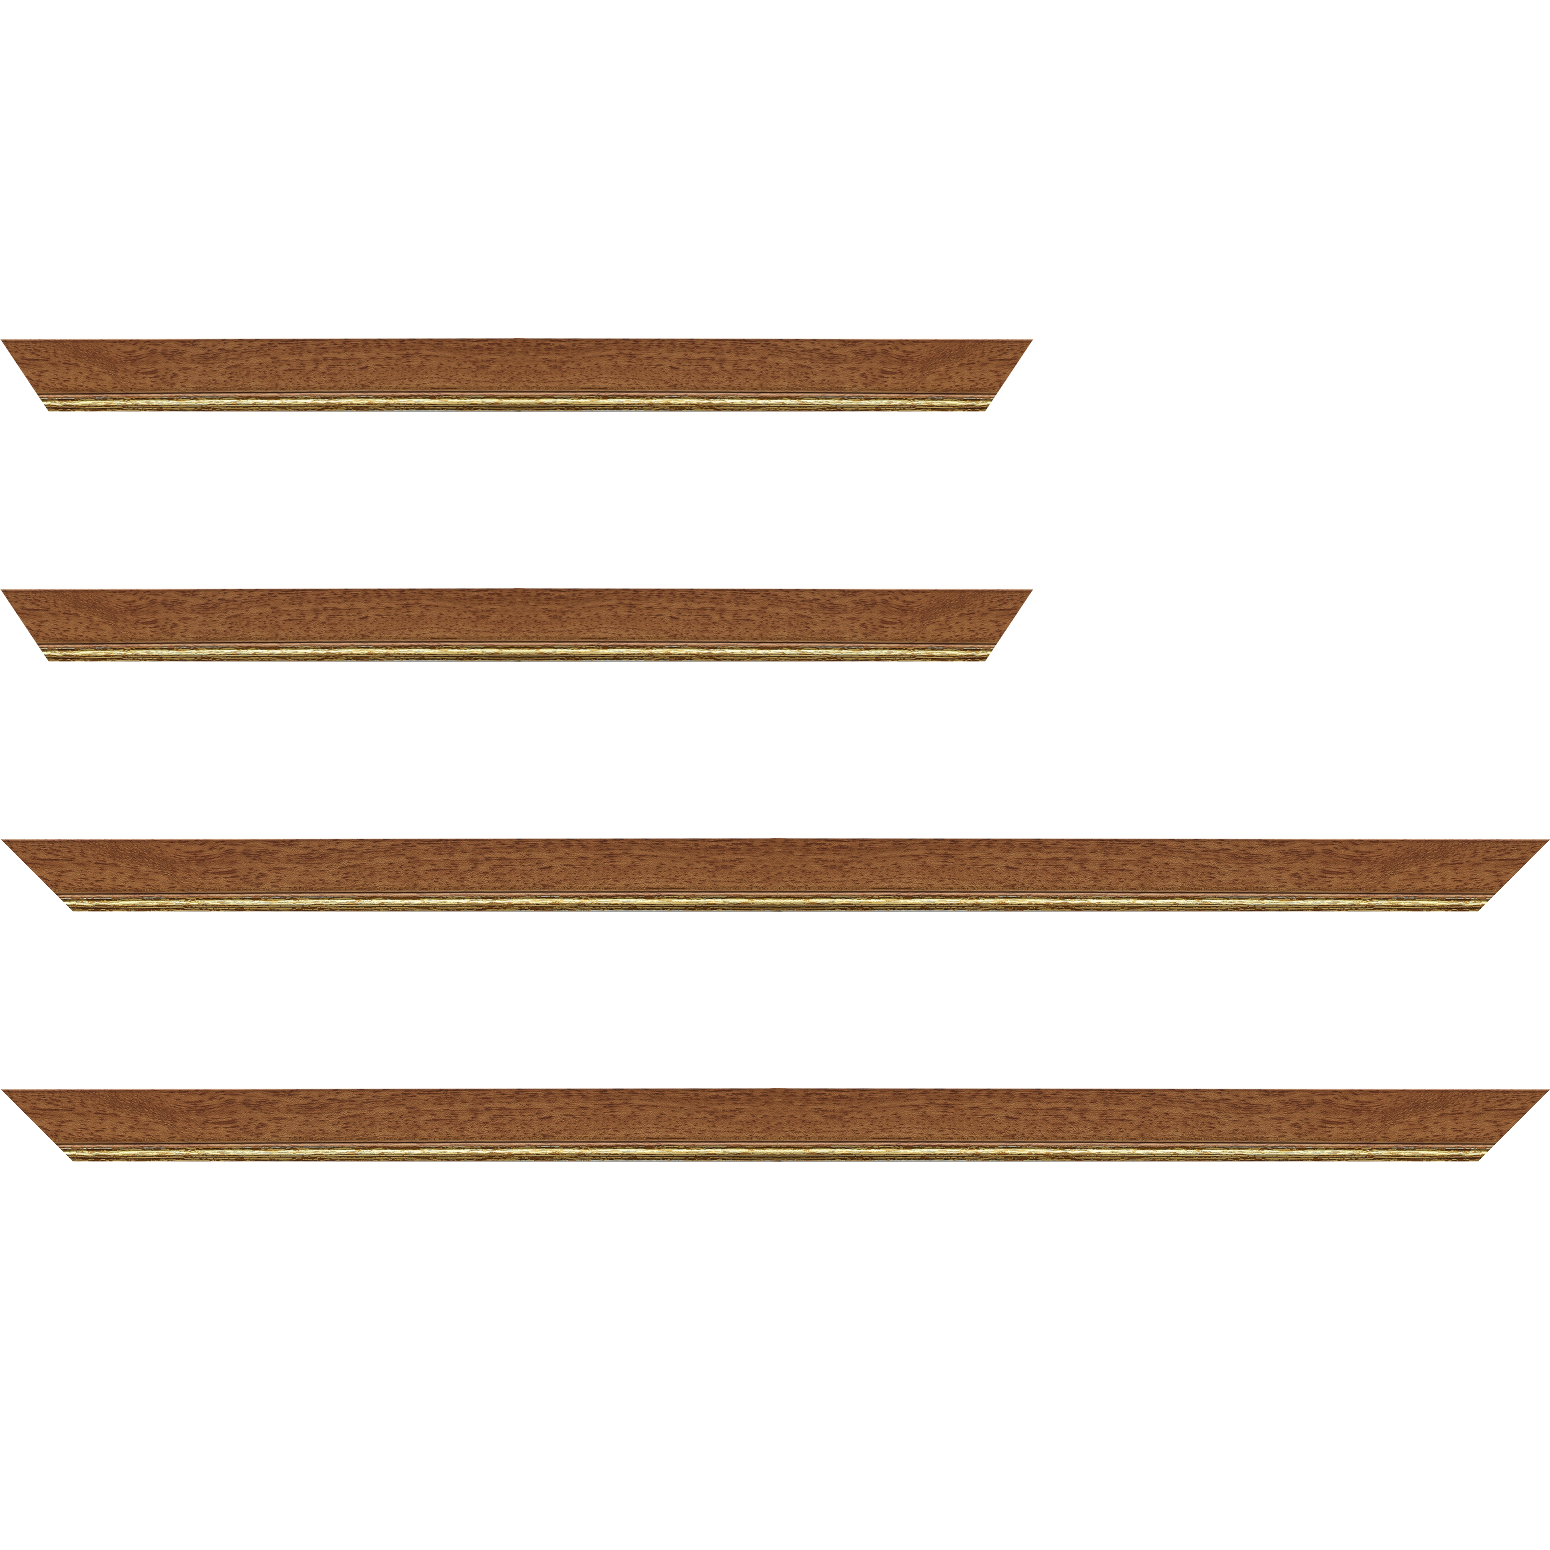 Baguette bois profil plat largeur 2.5cm couleur marron ton bois filet or - 24x30